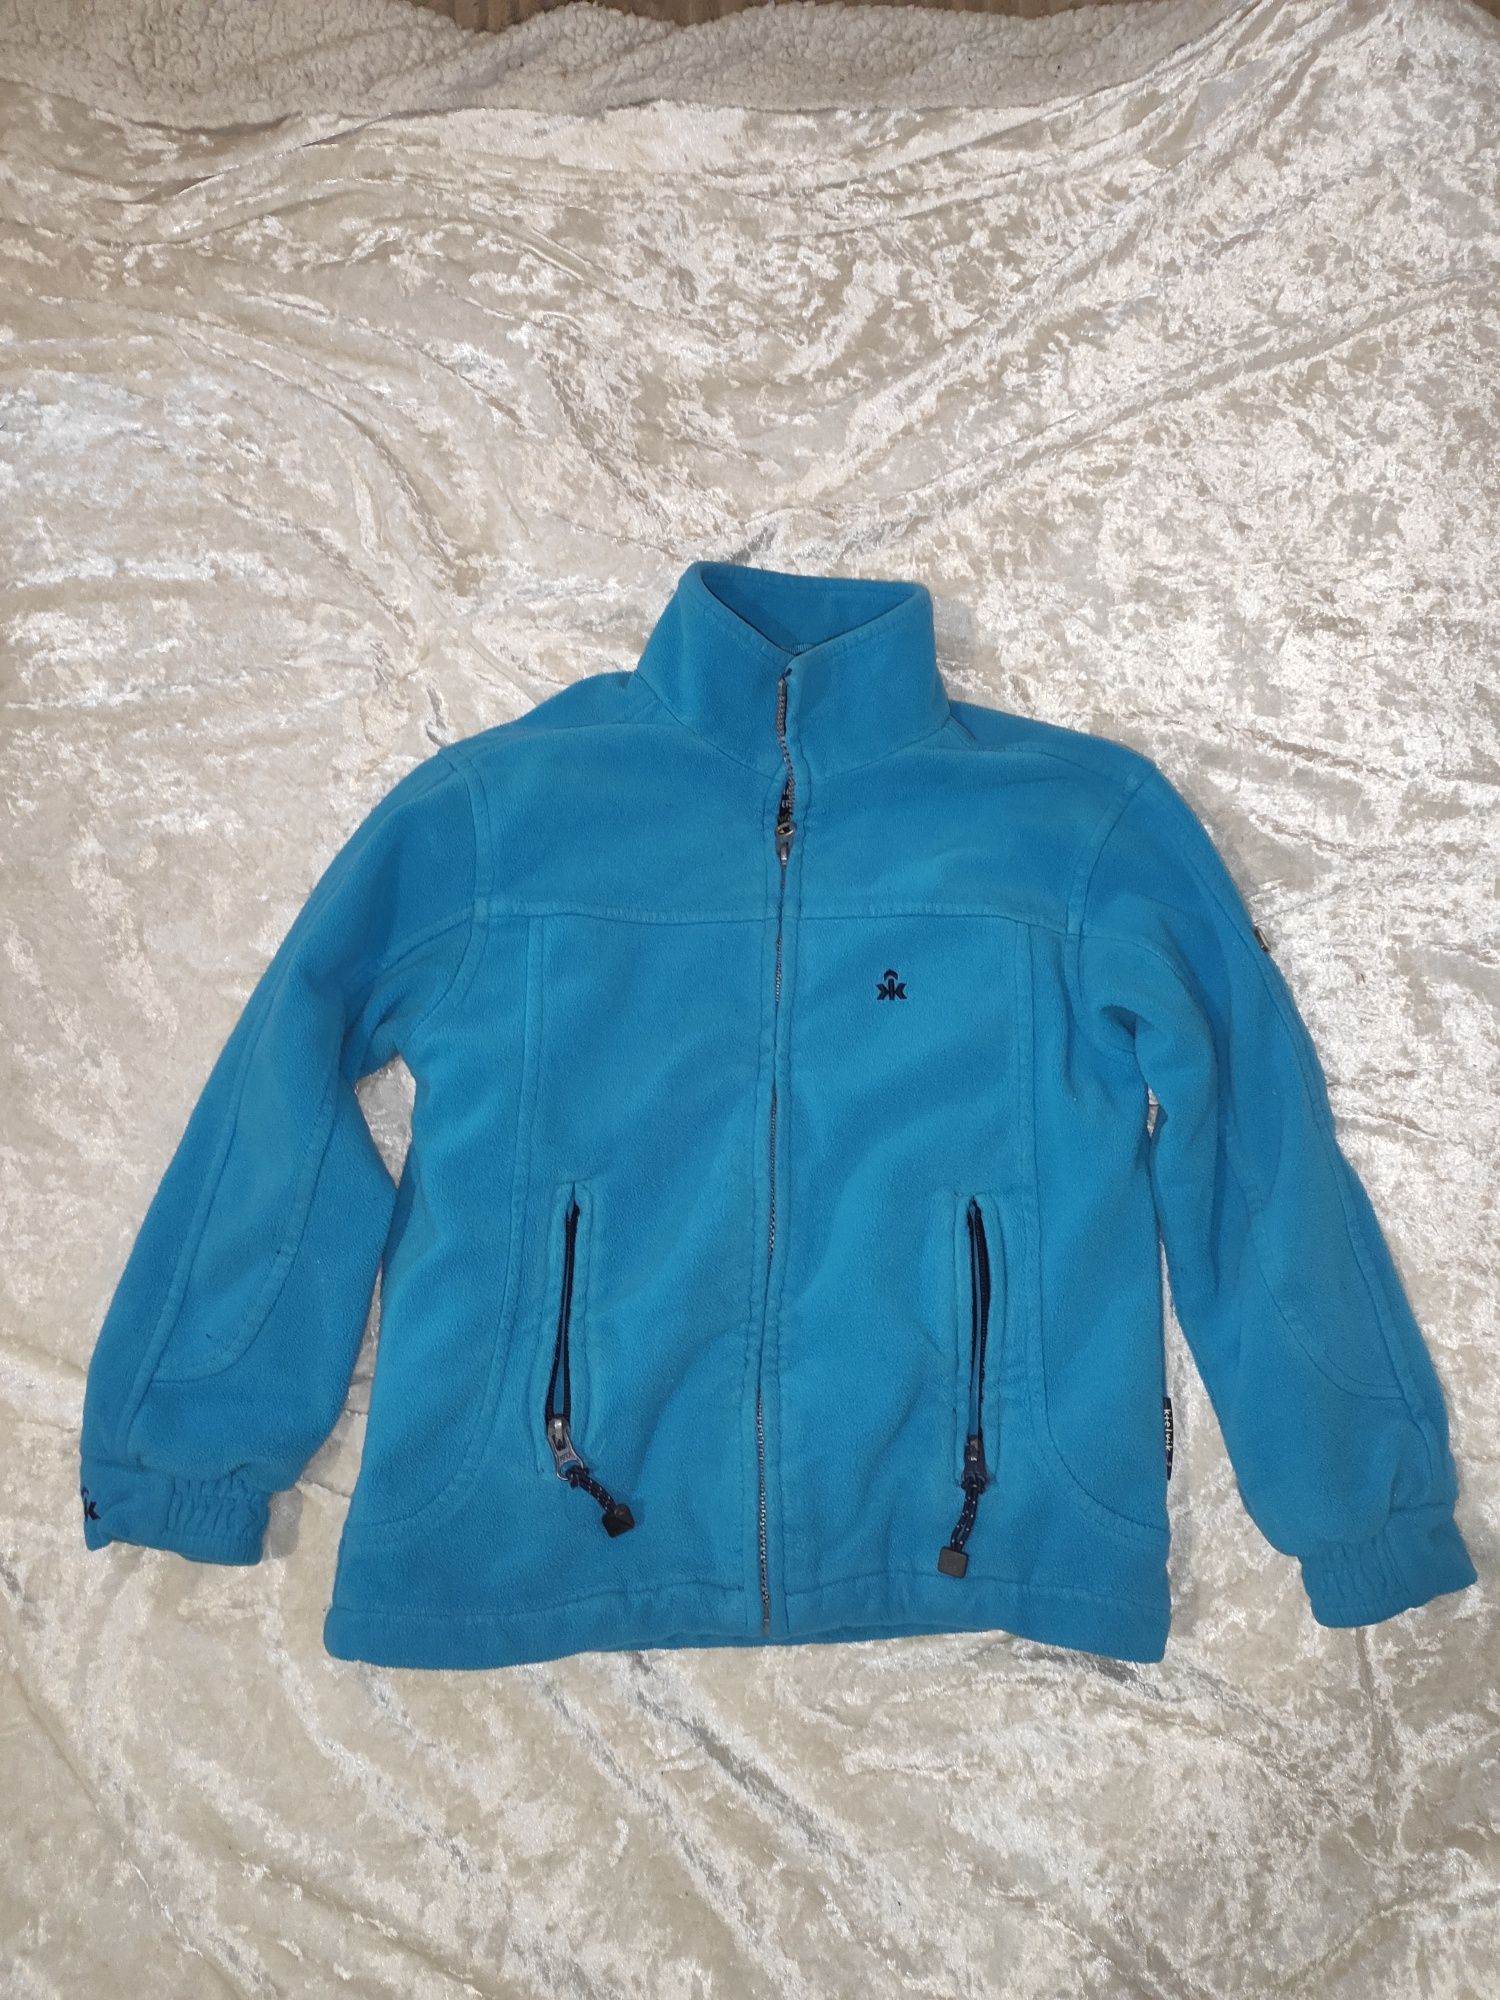 Флісова куртка-вітровка дитяча, фліска р. 128